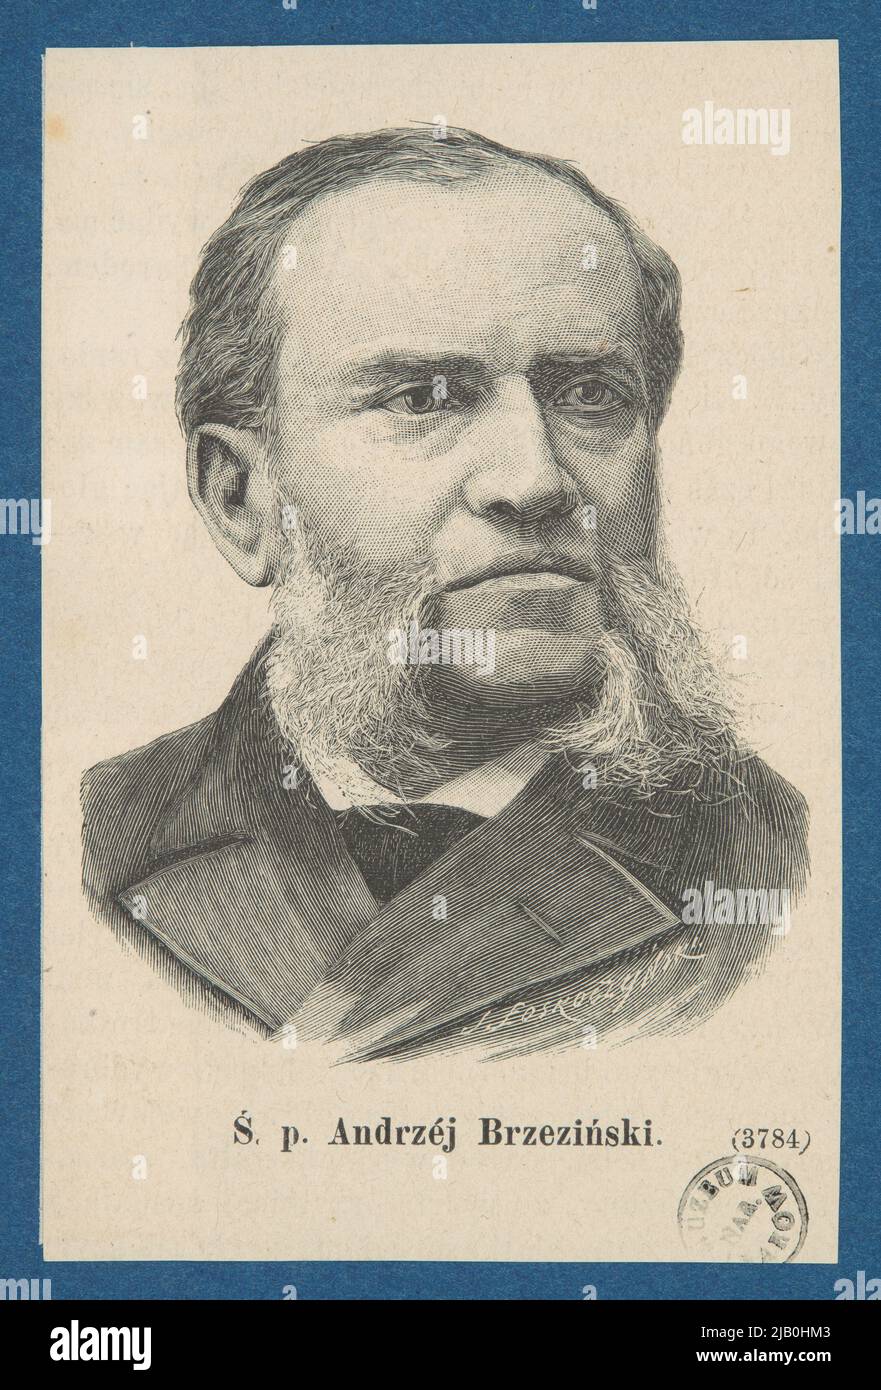 Ś. Mr. Andrzej Brzeziński Słujekół Ski, Józef (1857 1928) Stock Photo